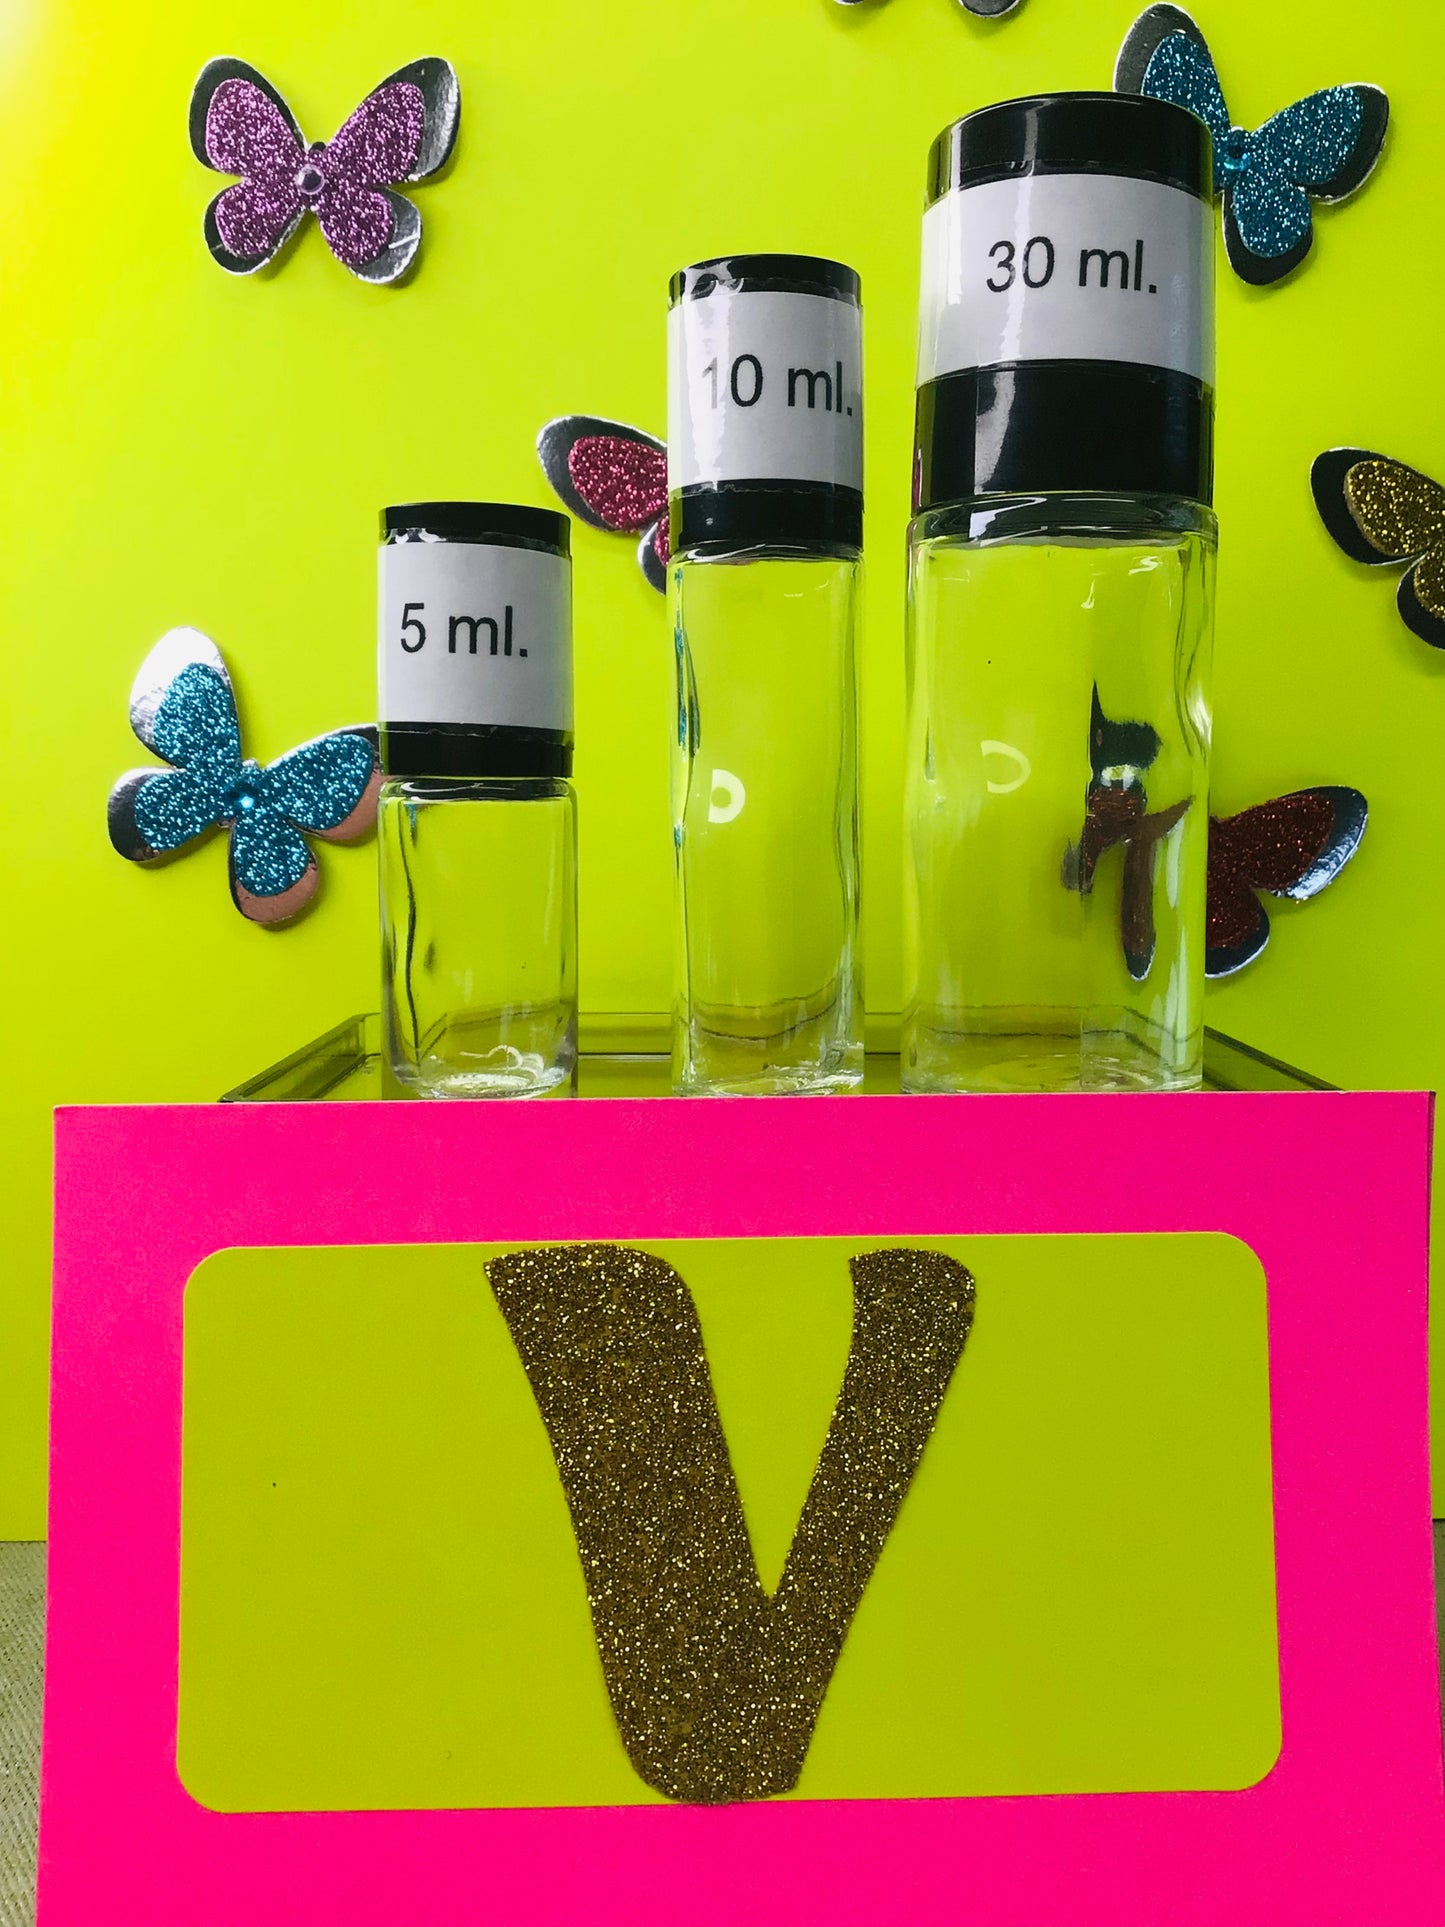 Perfume Oils, "V", Designer Type, Premium, Long Lasting Fragrances, Highest Quality Body Oils